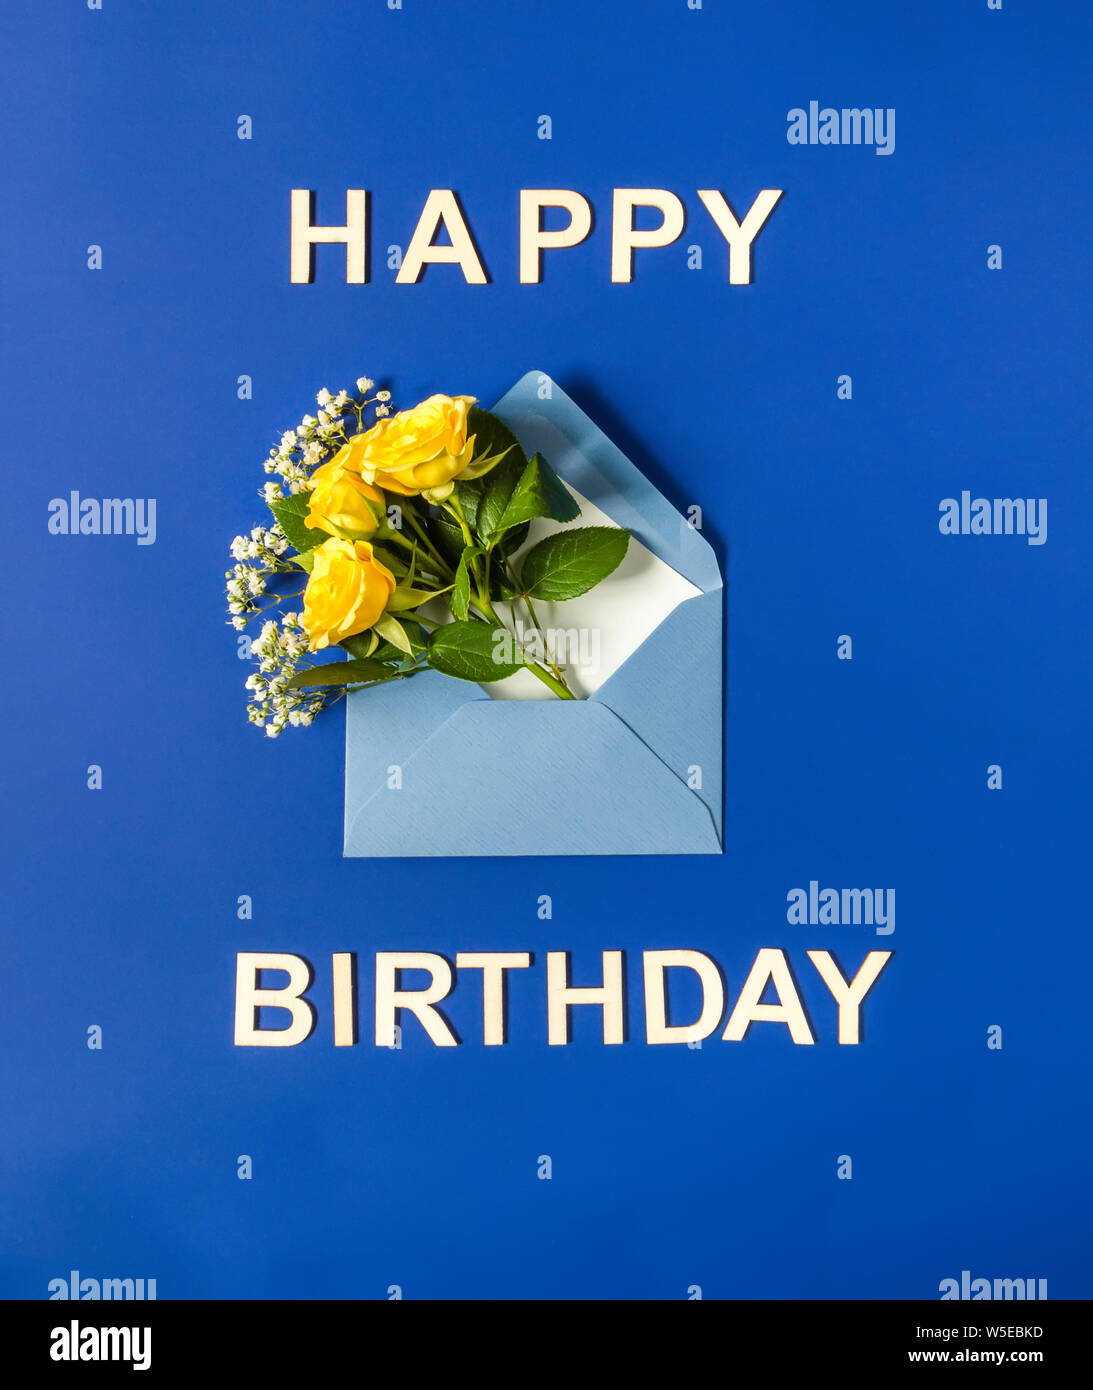 Gelbe Rosen und weißen Gypsophila in blauen Umschlag close-up auf blauem Hintergrund. Text Happy Birthday, Holz- briefe. Ansicht von oben, flach. Vorlage für Stockfoto